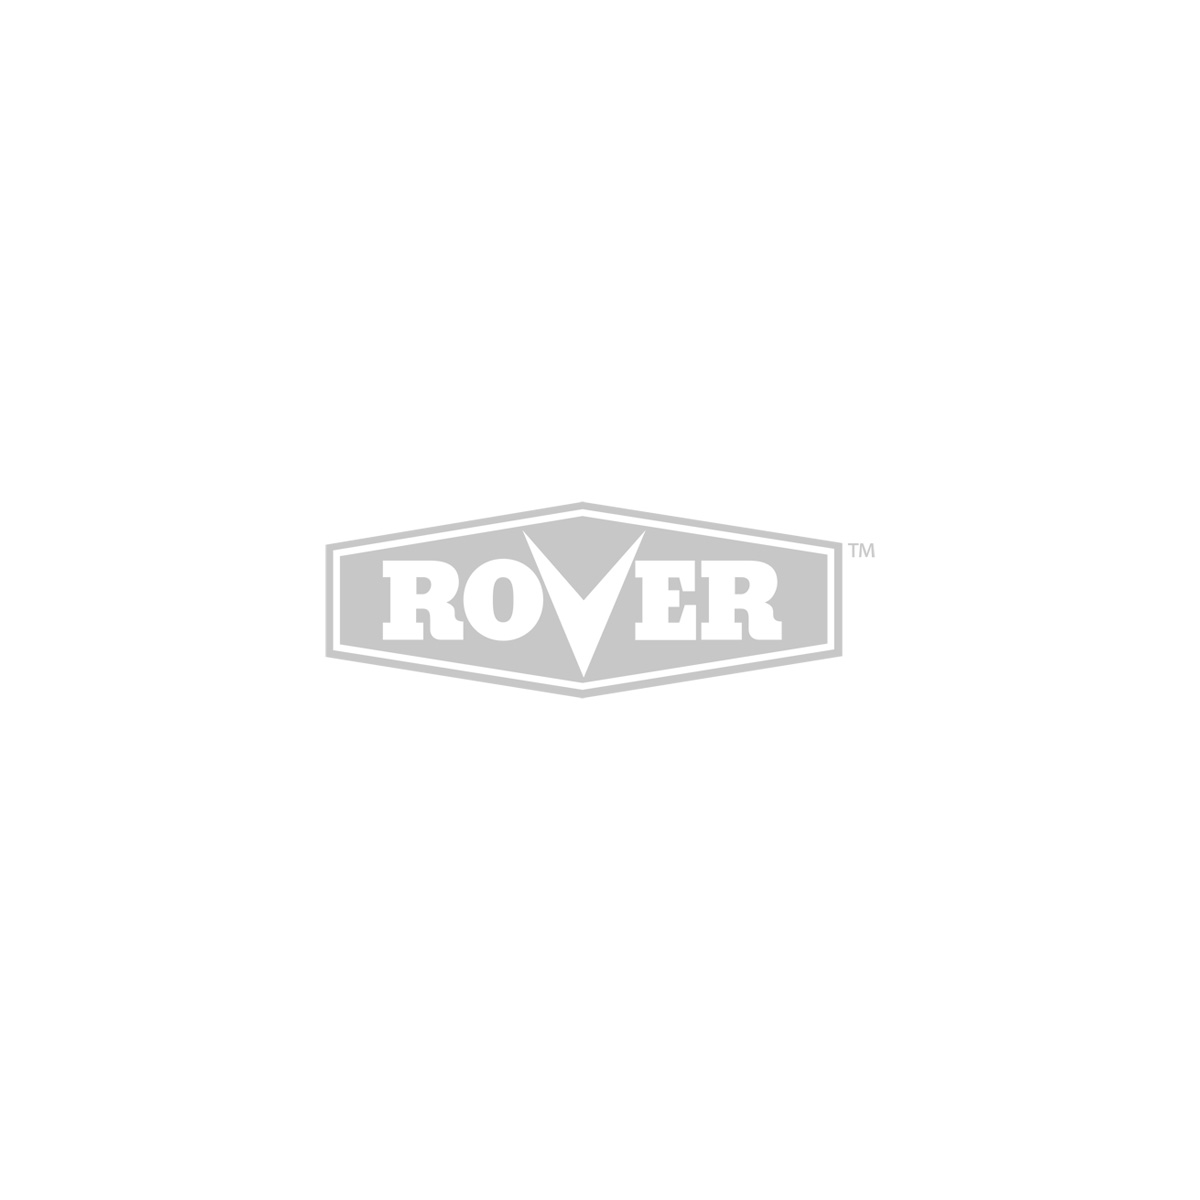 Rover Duracut 400 Series Air Filter